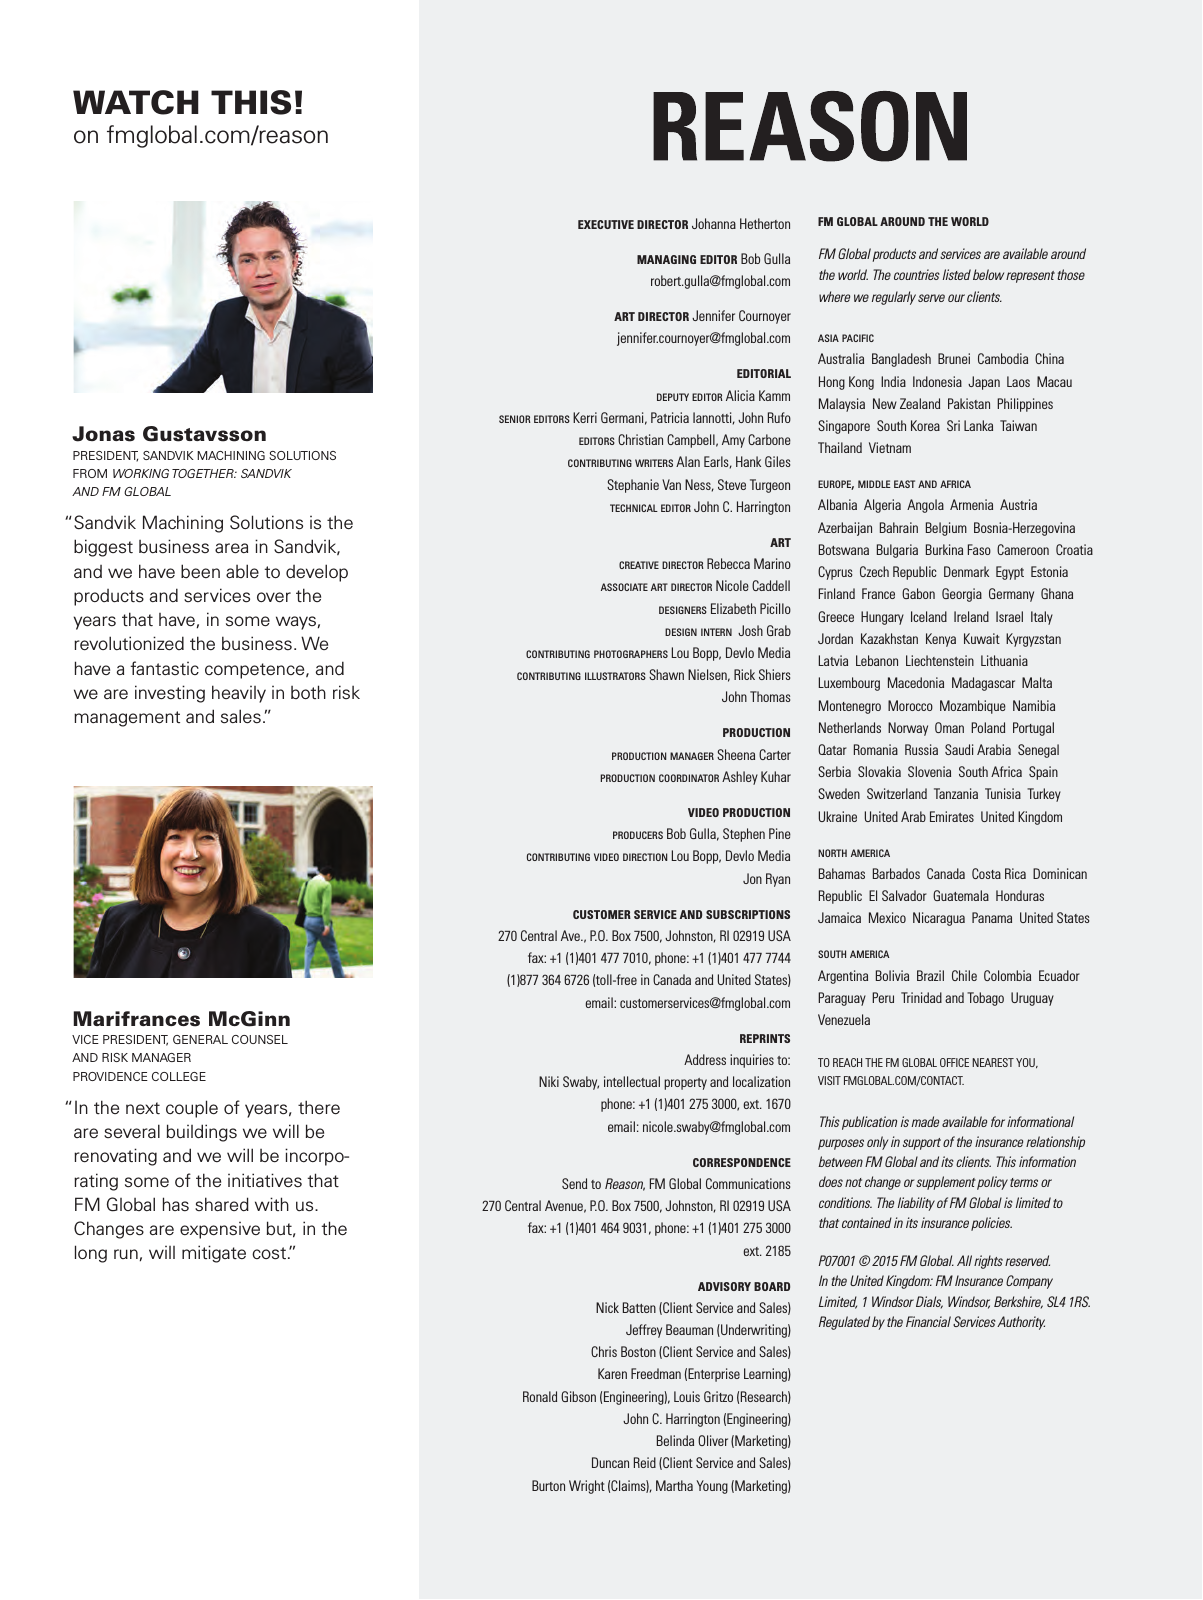 Vorschau Reason Magazine Issue 2 2015 Seite 4